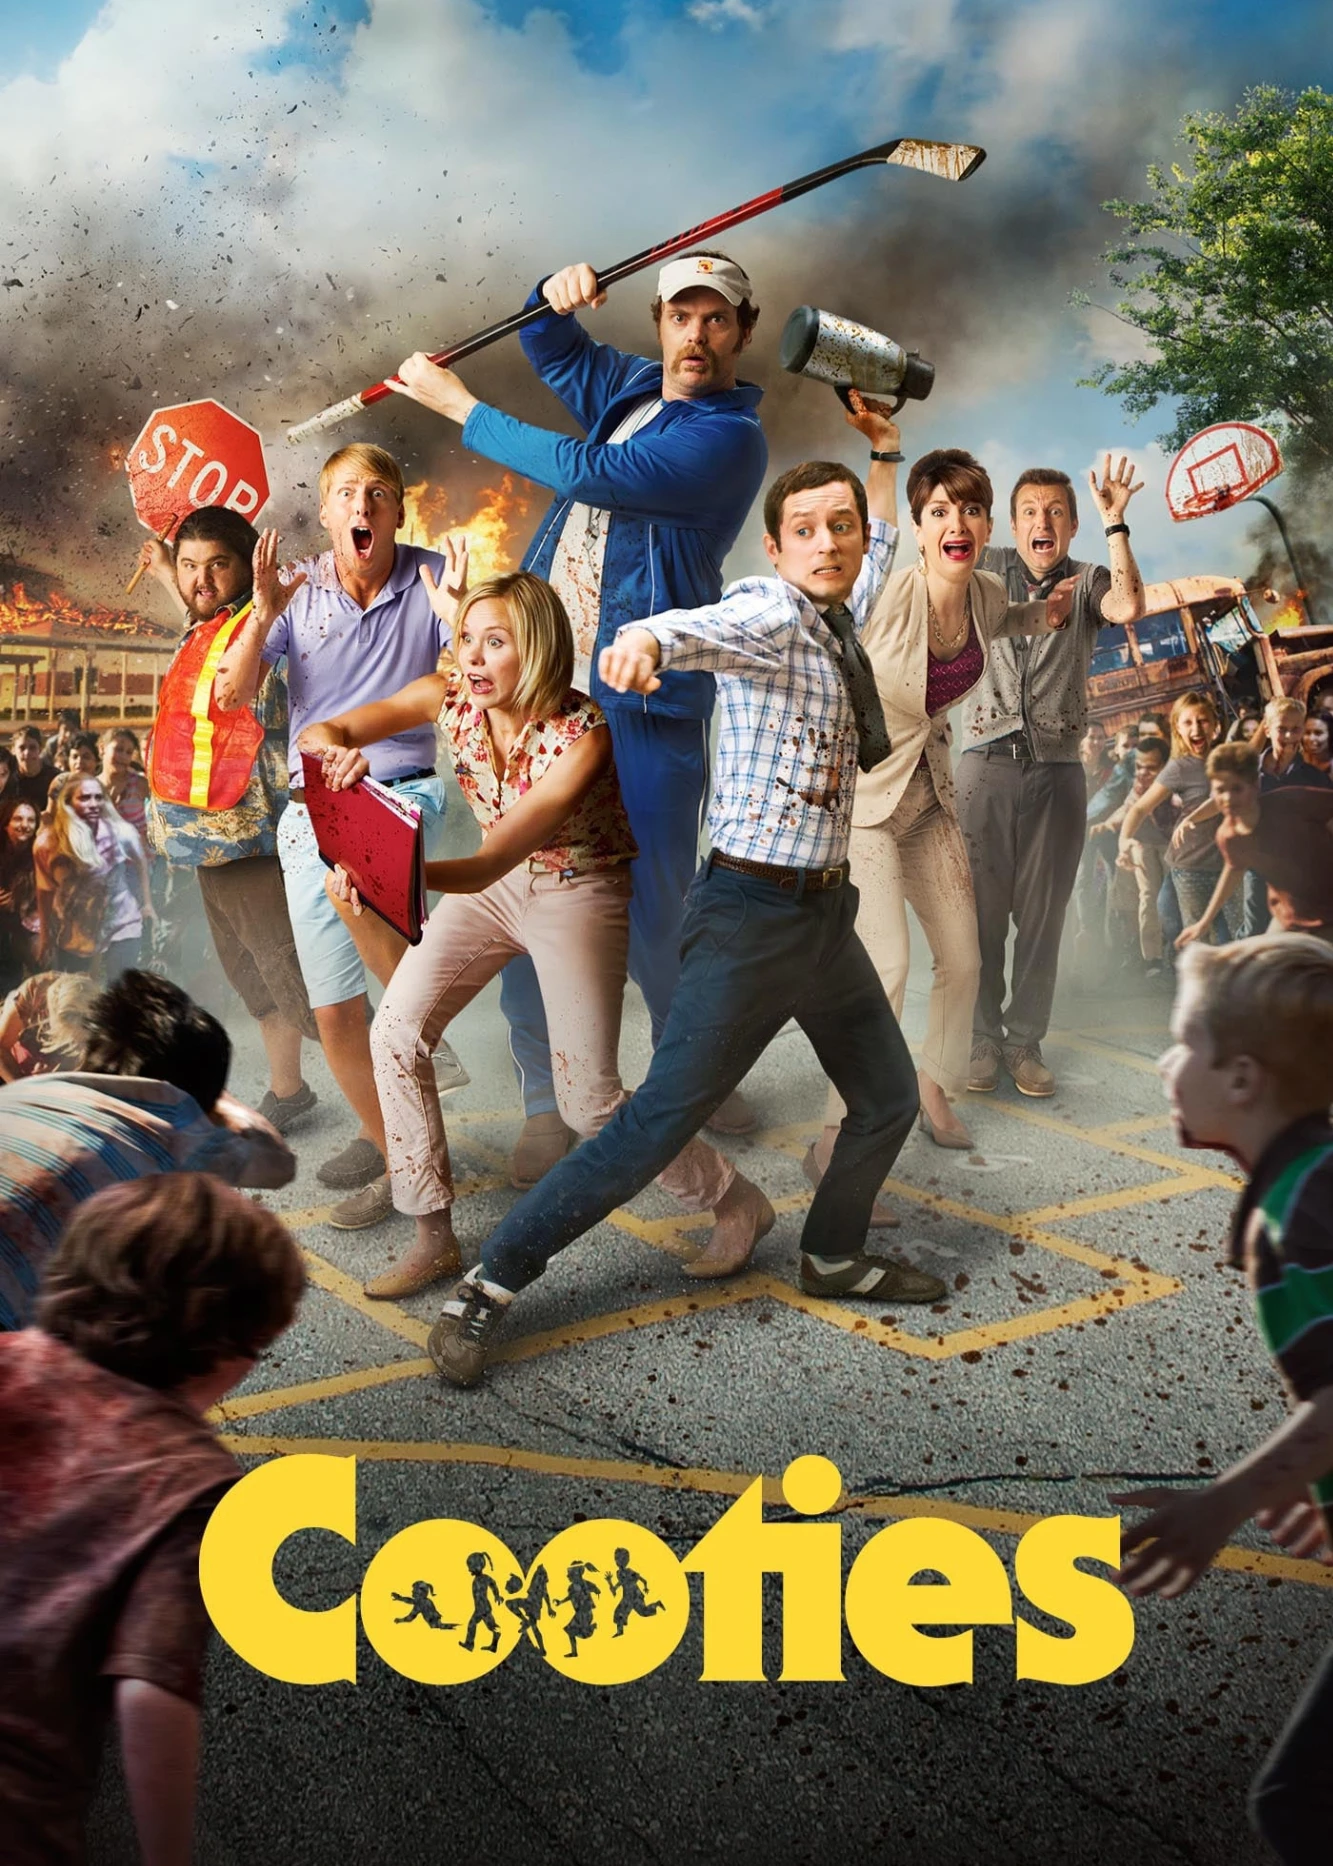 Cooties | Cooties (2014)